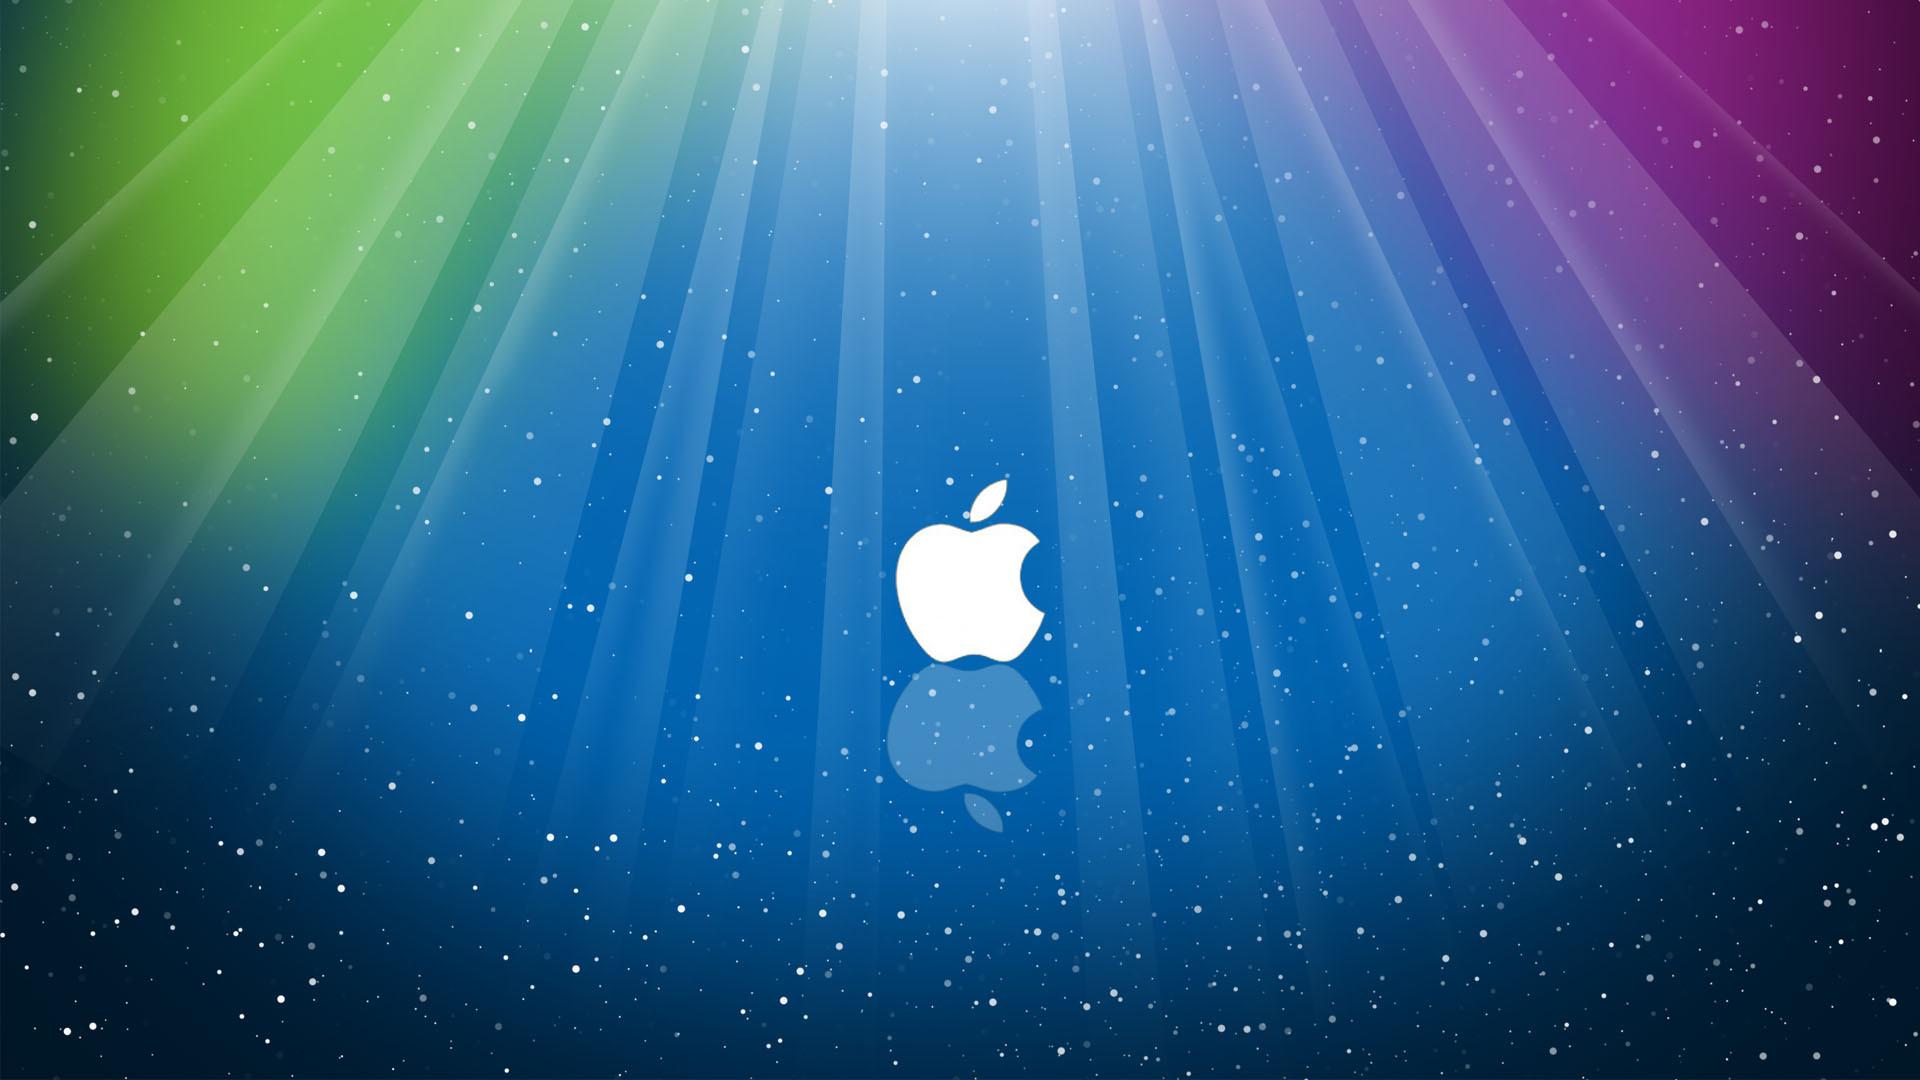 Apple under the blue light HD desktop wallpaper : Widescreen ...